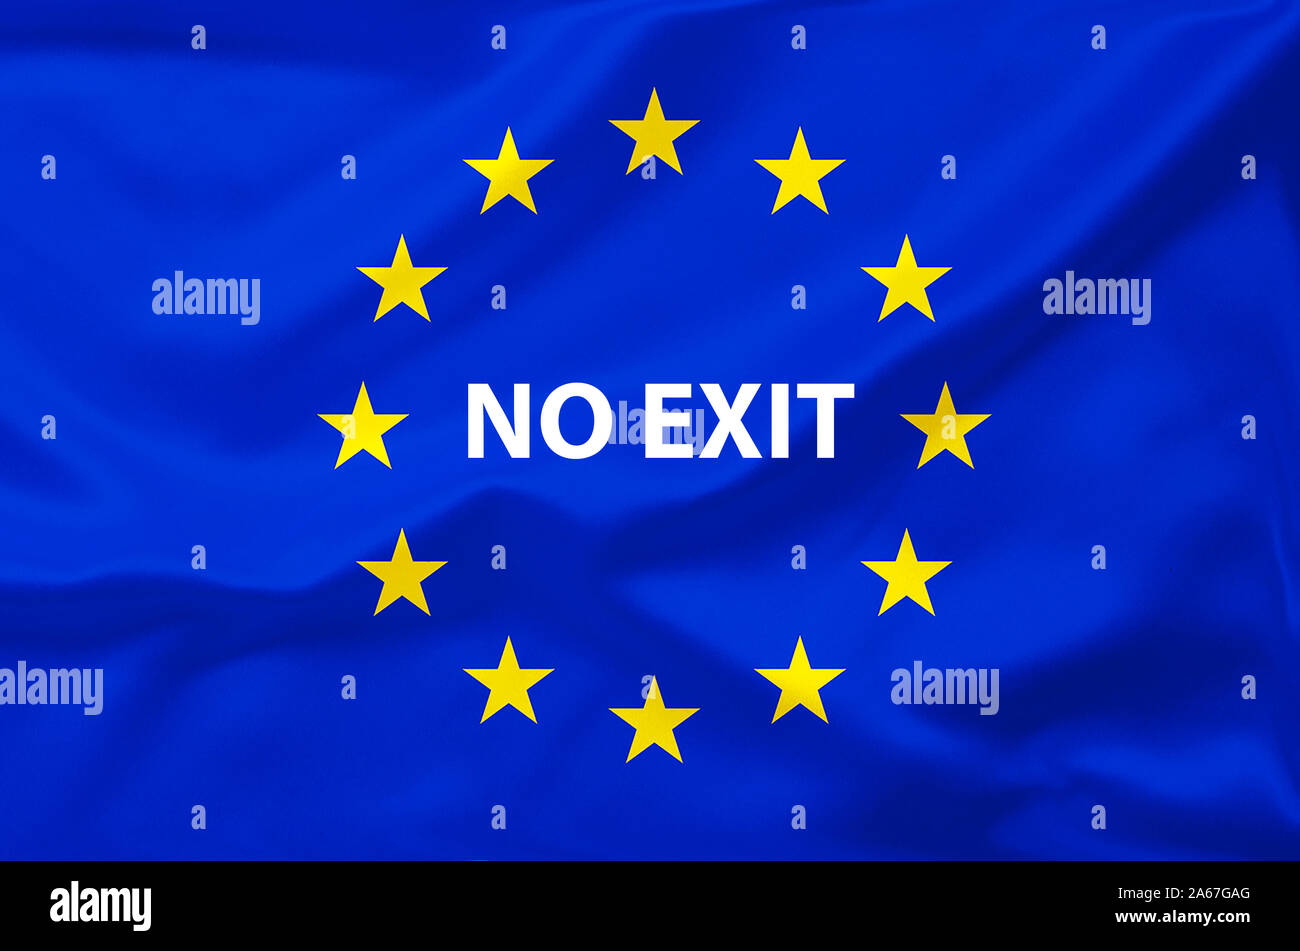 Brexit, Euroflagge, Flagge, Vereinigtes Koenigreich, UK, Grossbritannien, Eurostars, No Exit, Stock Photo